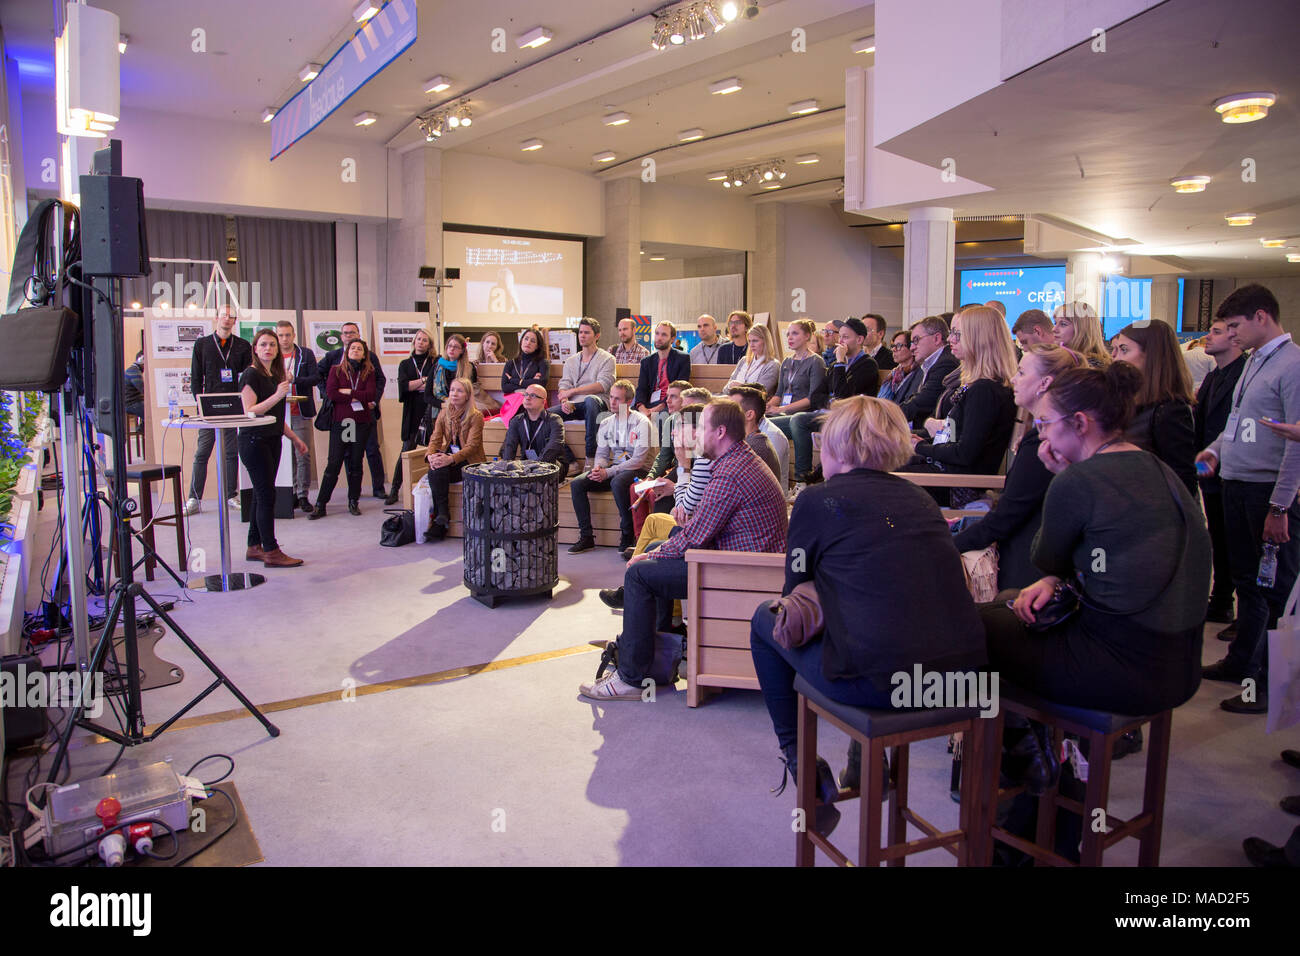 Eurobest, celebrando los mejores trabajos creativos en Europa, European Festival de Publicidad 2014 en Helsinki, Finlandia - 01 Dic 03 2014 © ifnm Foto de stock